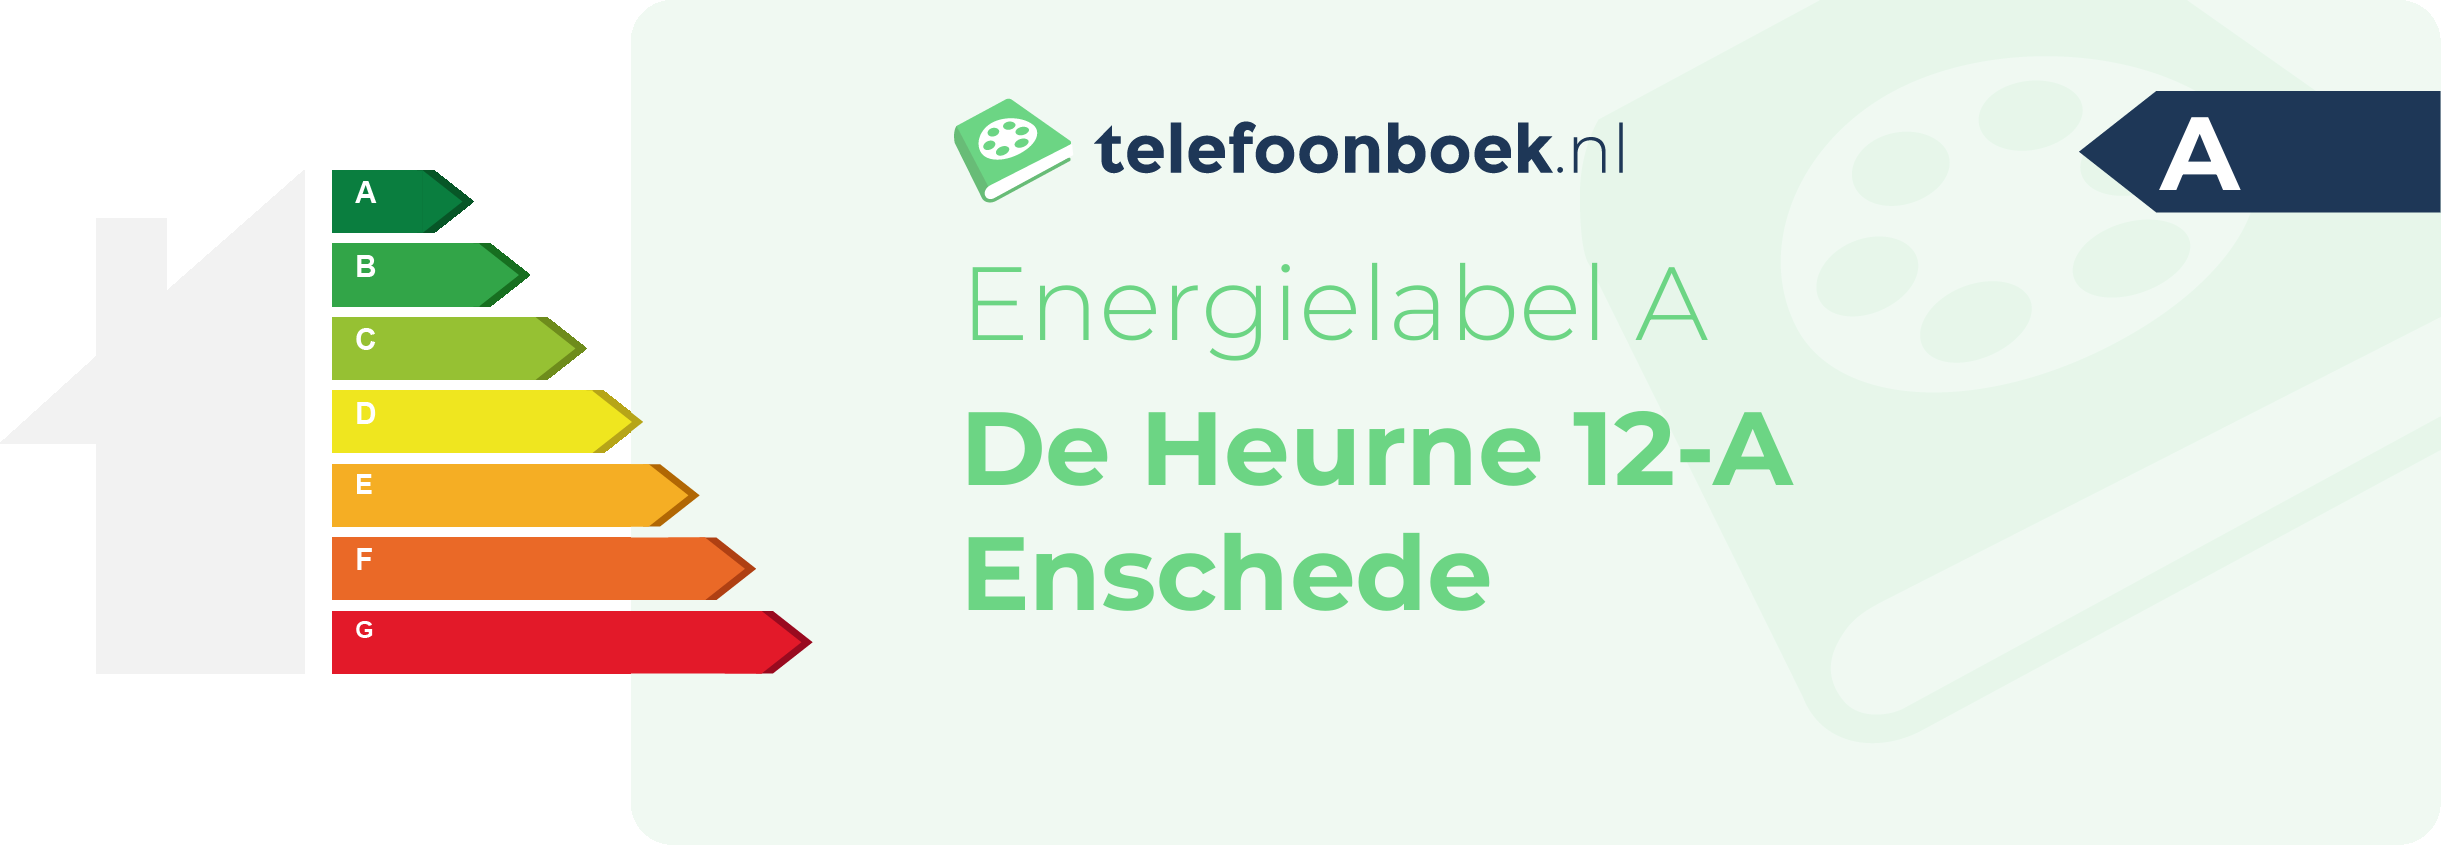 Energielabel De Heurne 12-A Enschede